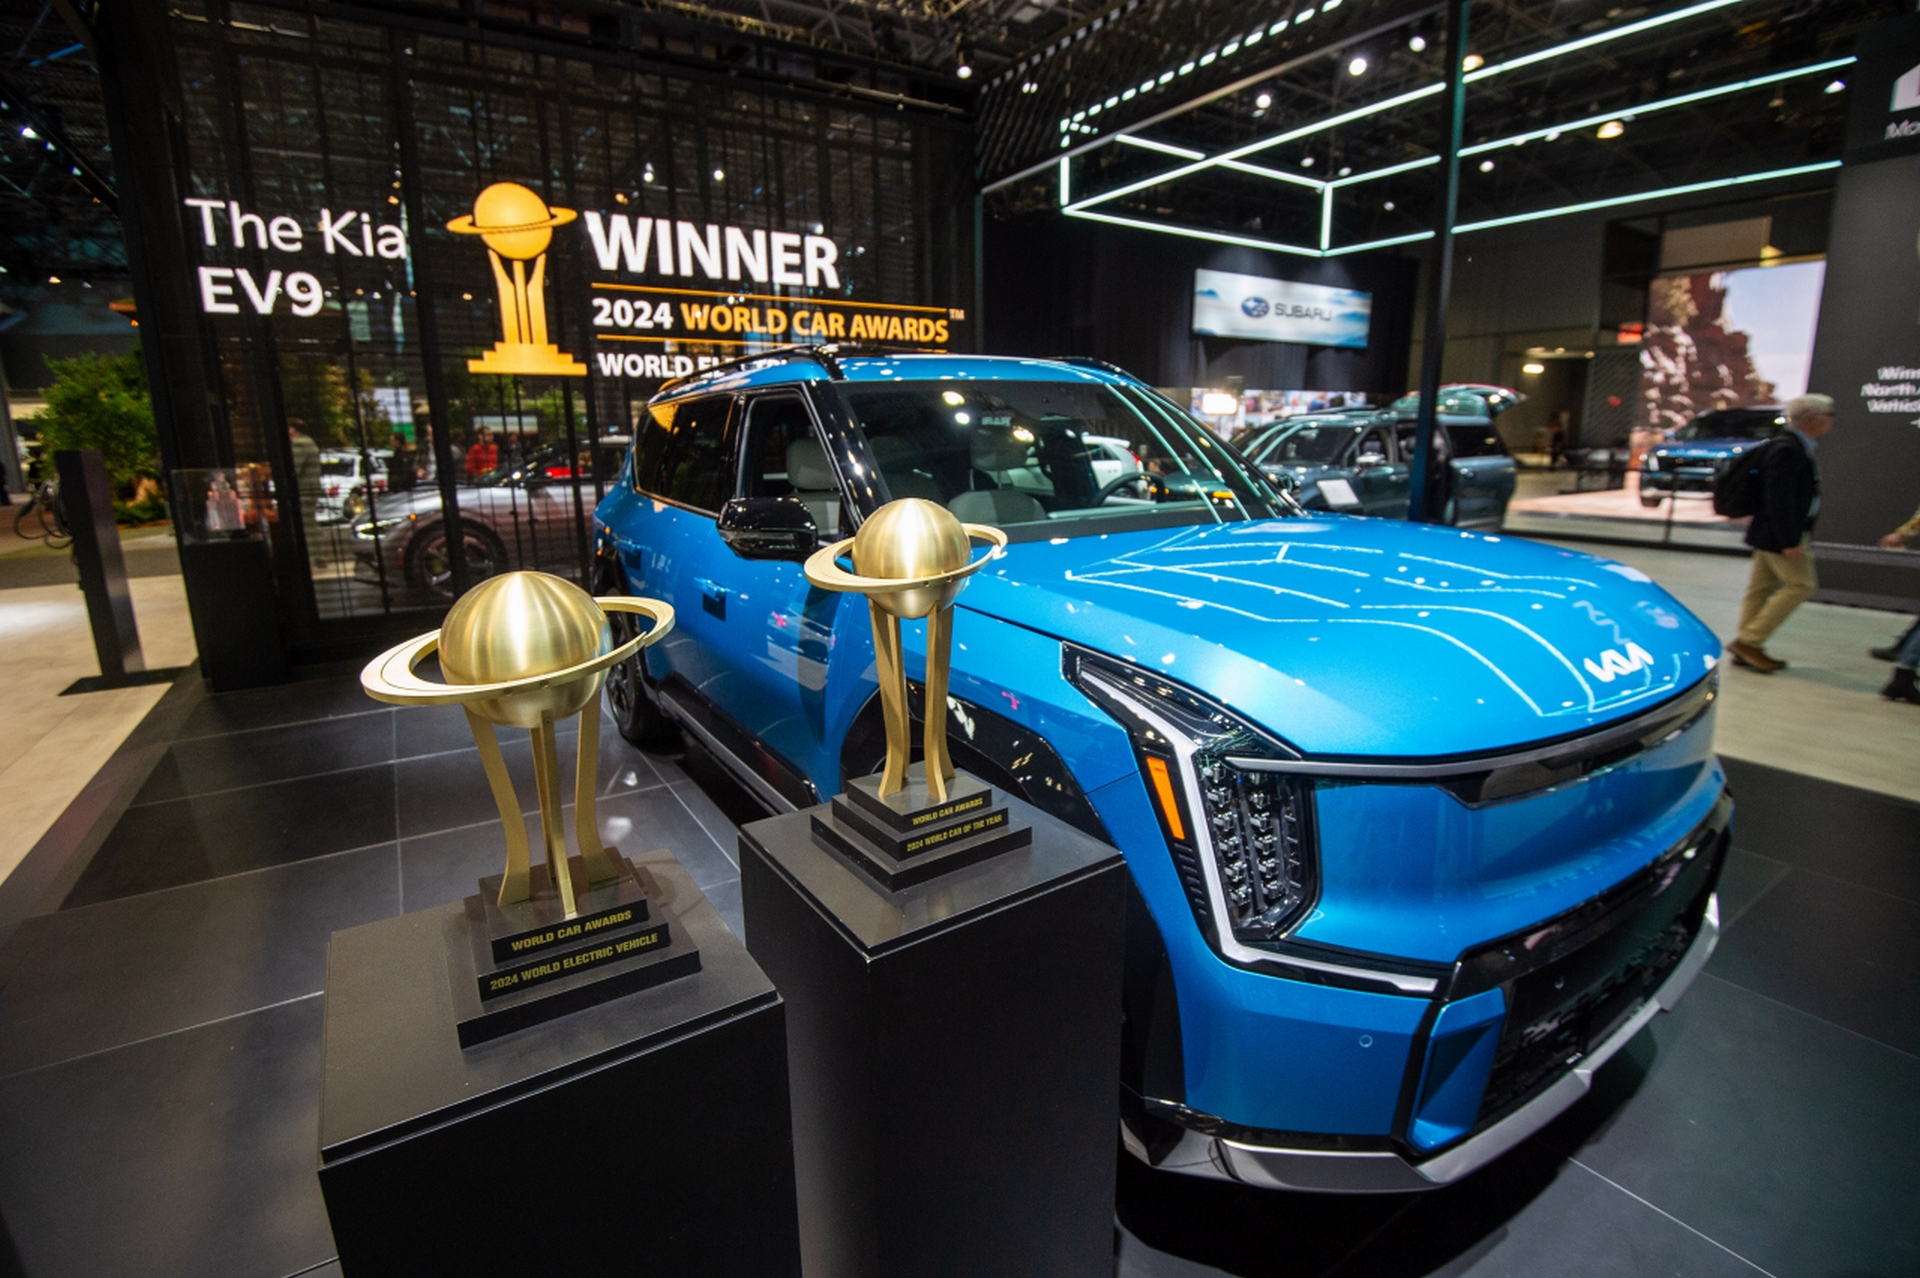 Deszcz nagród dla Kia EV9 – z tytułem Światowego Samochodu Roku 2024 na czele